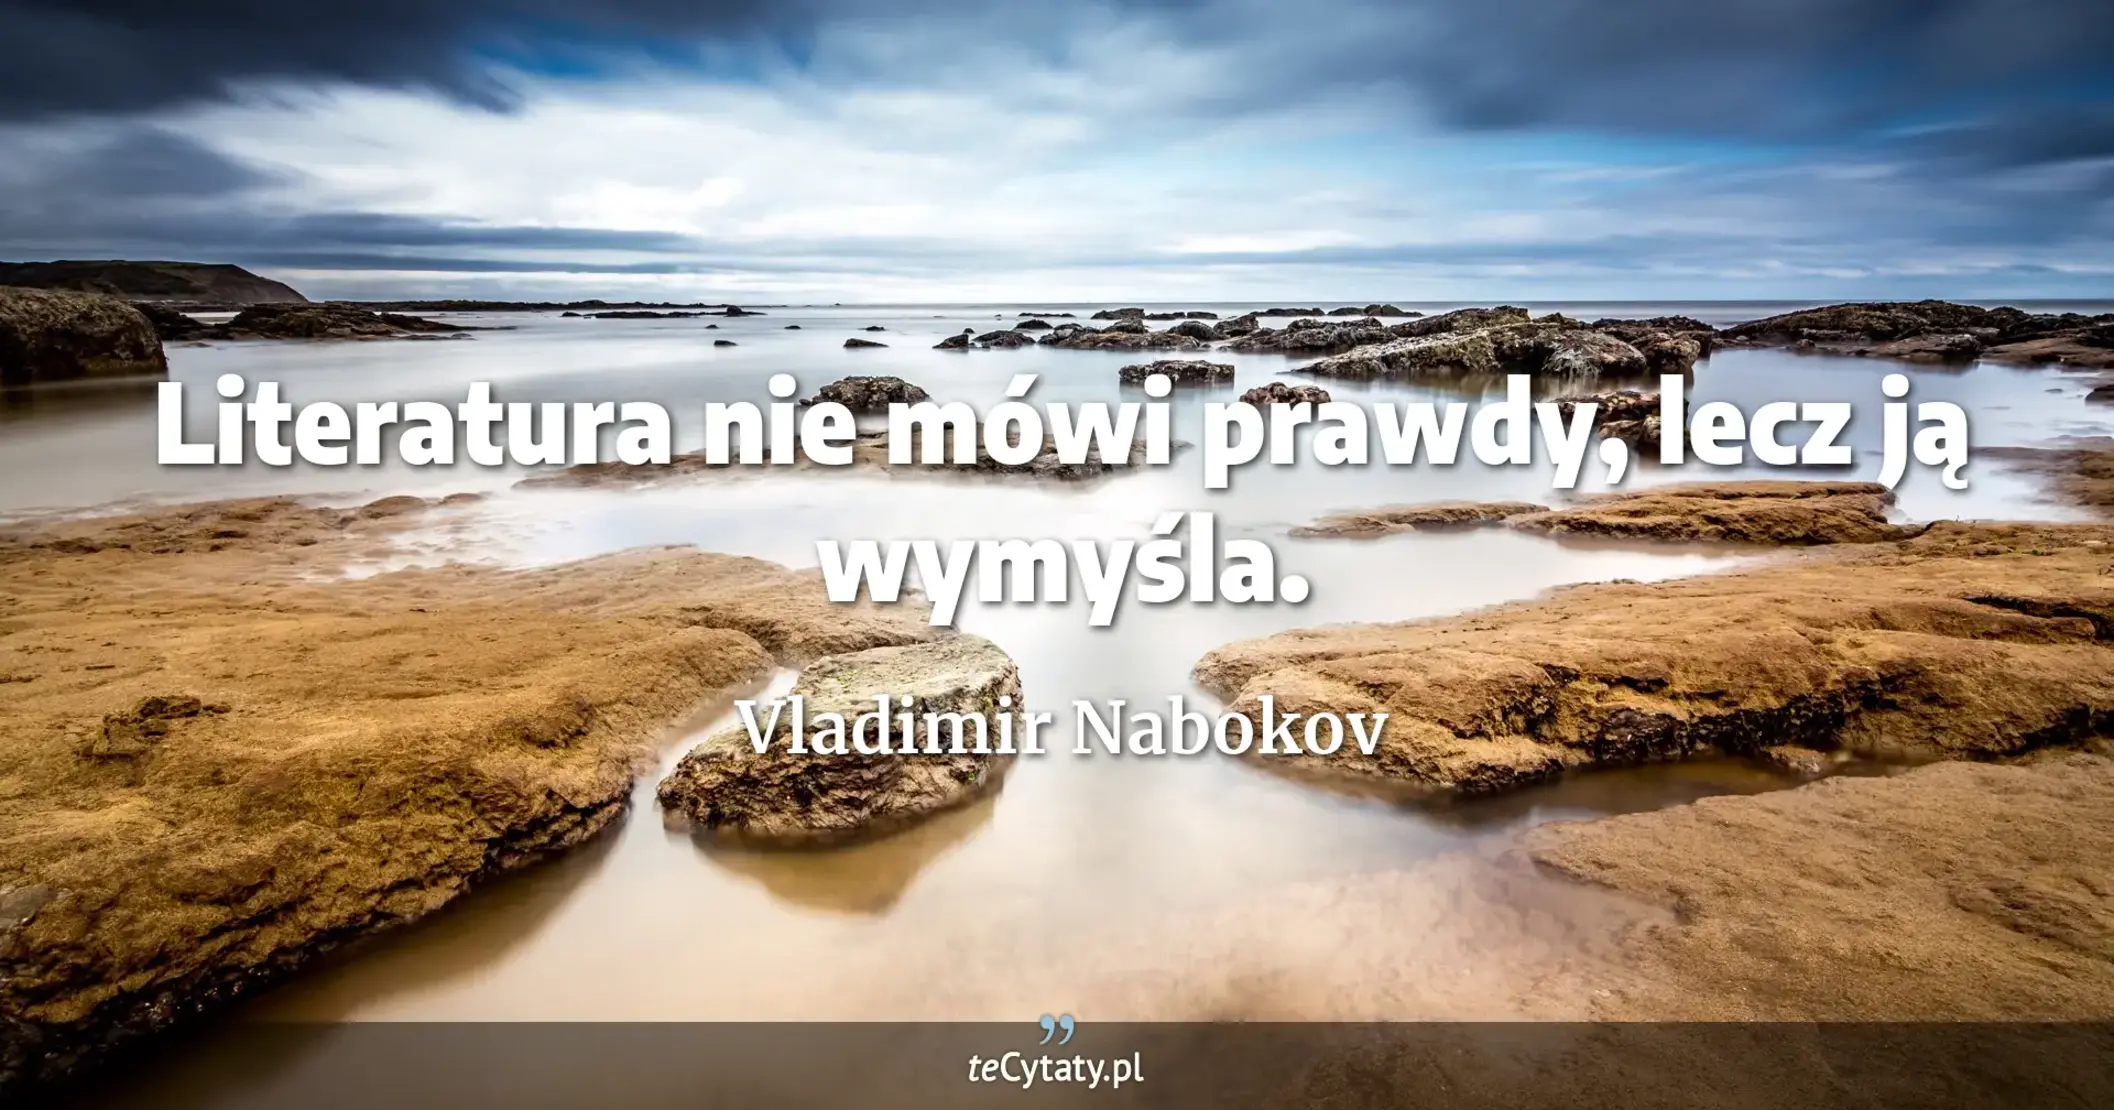 Literatura nie mówi prawdy, lecz ją wymyśla. - Vladimir Nabokov